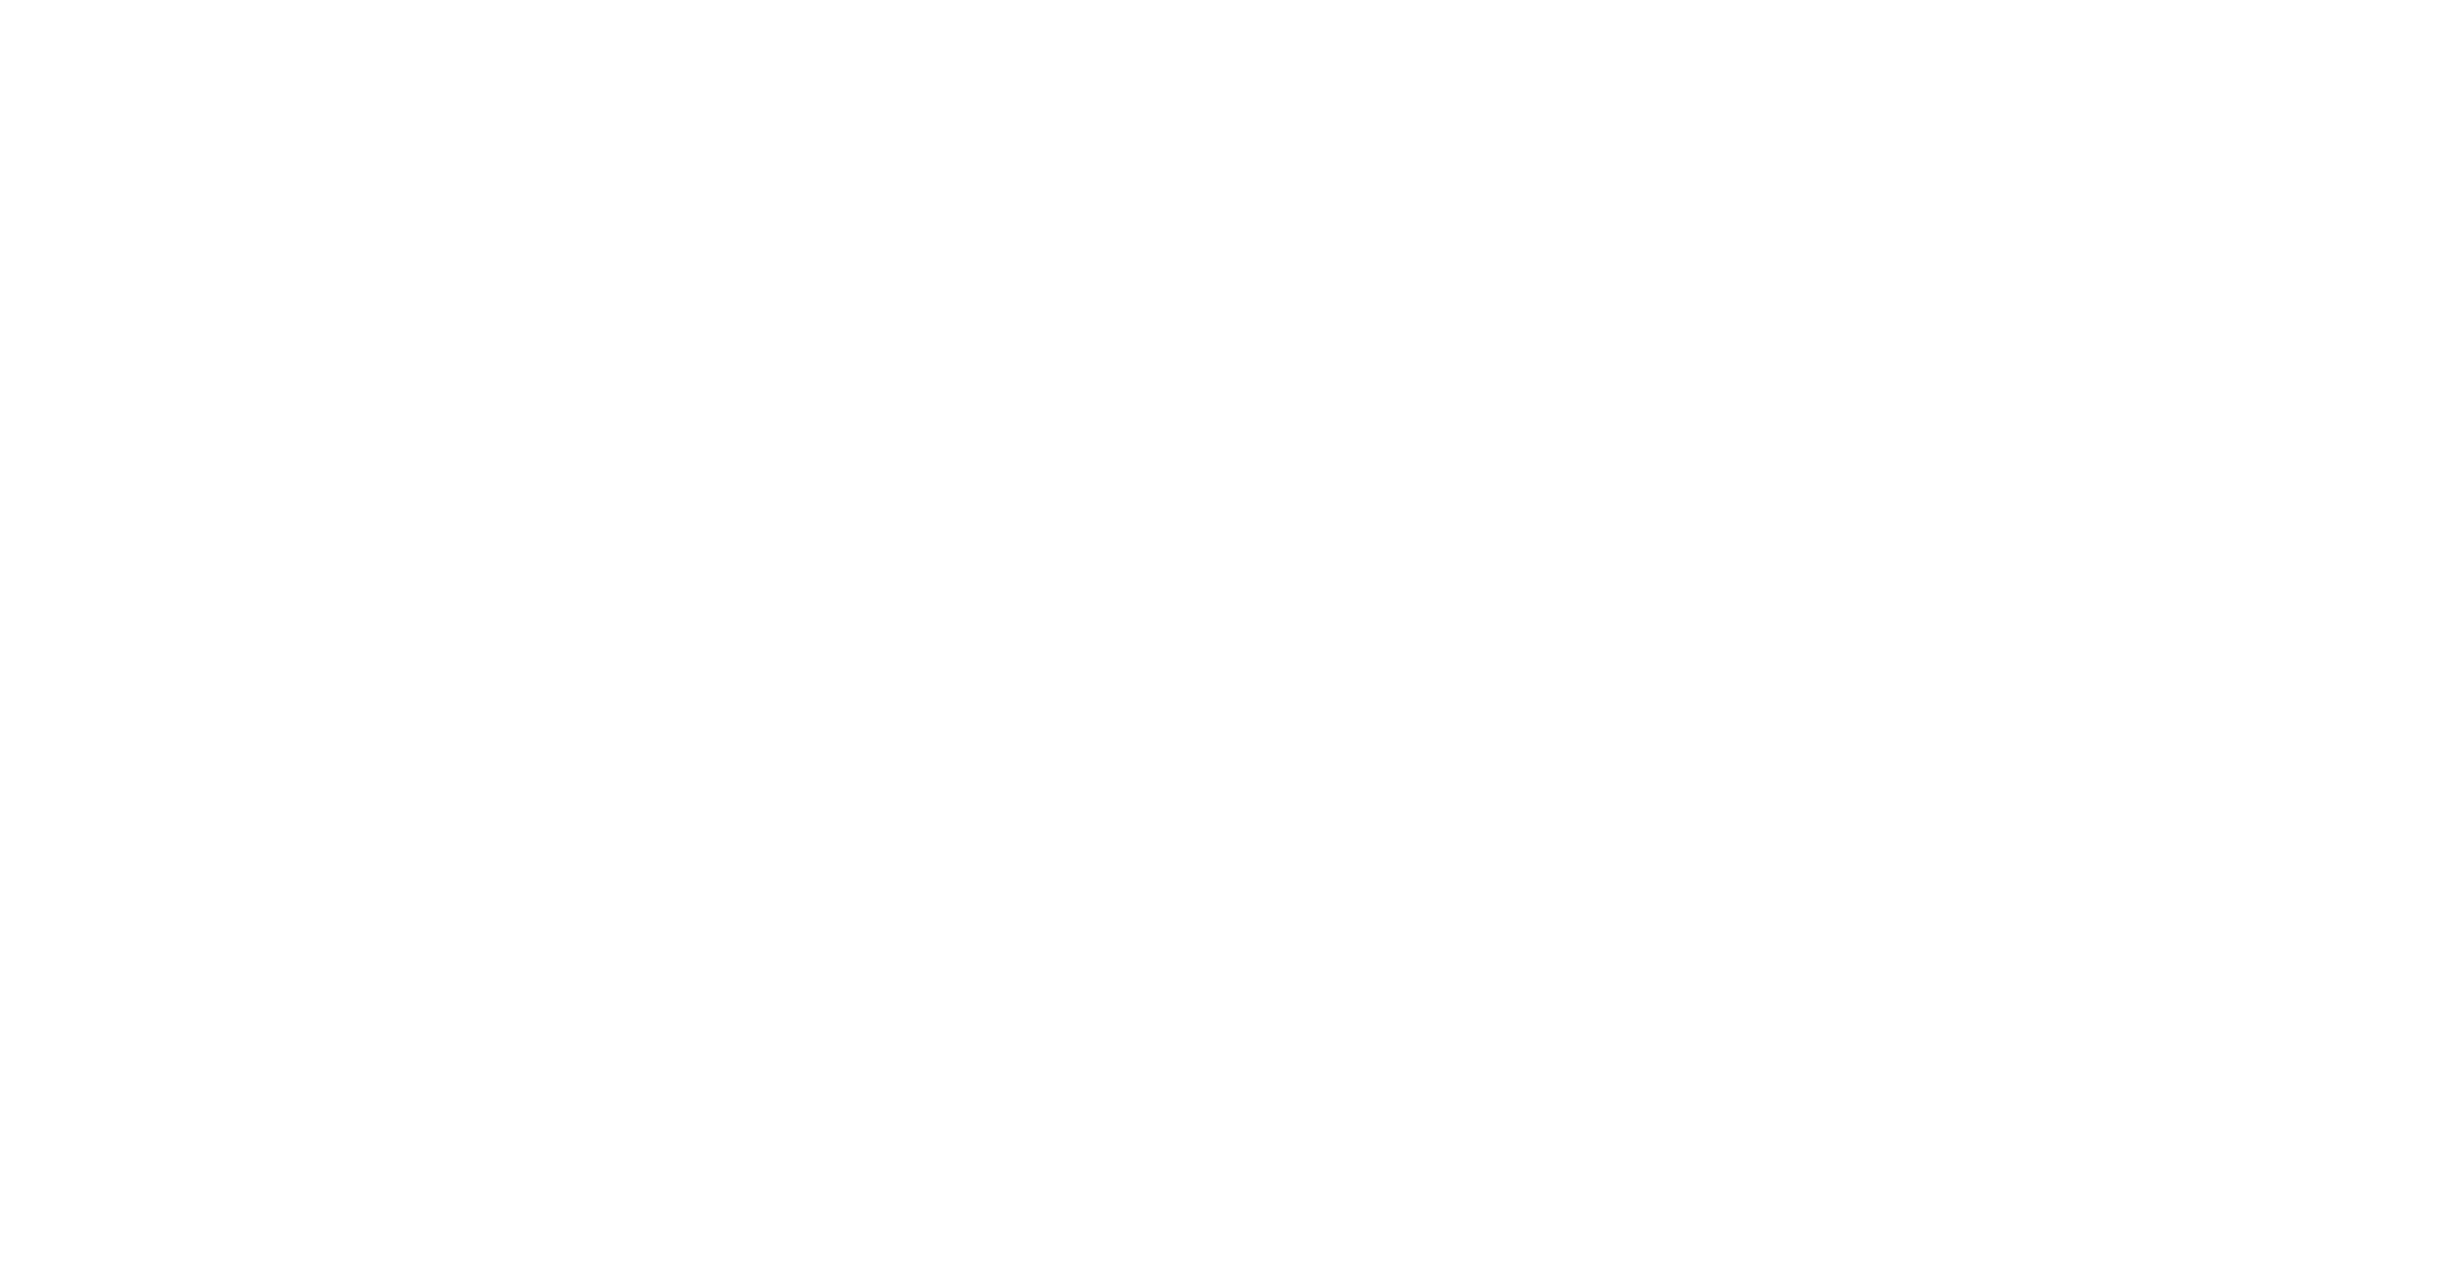 The Next Karate Kid logo